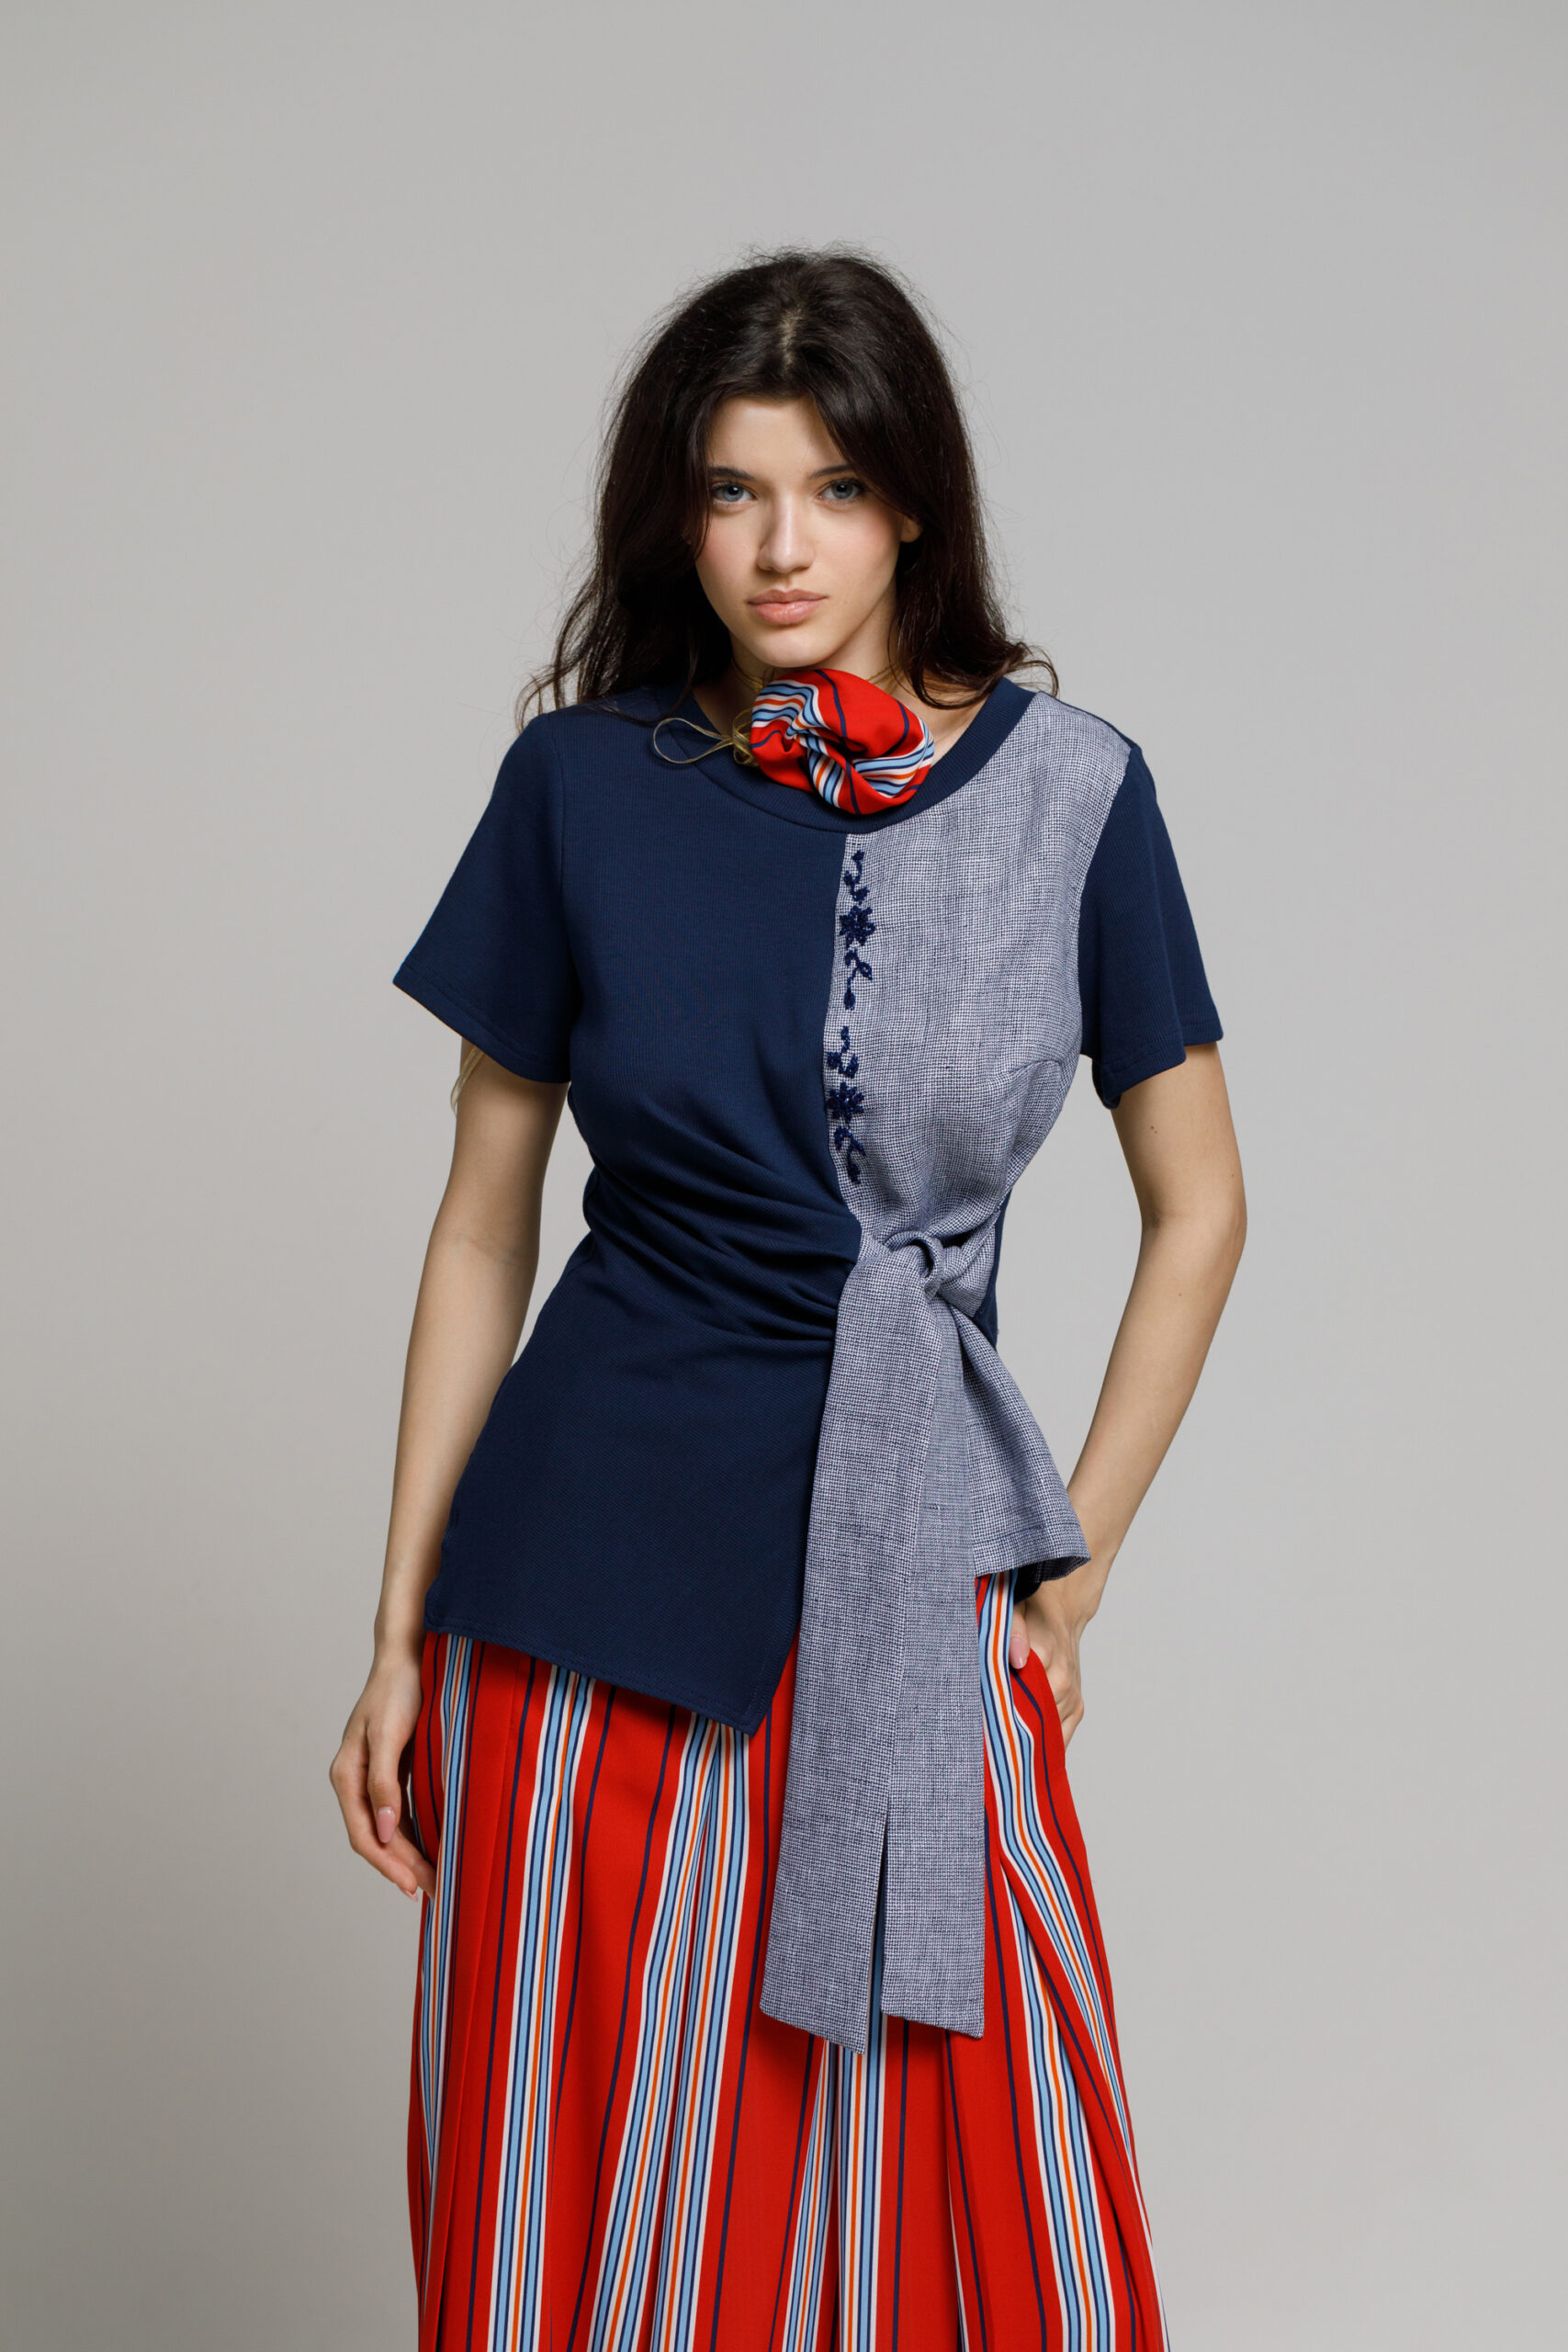 Bluza PAX bleumarin cu cordon si broderie. Materiale naturale, design unicat, cu broderie si aplicatii handmade